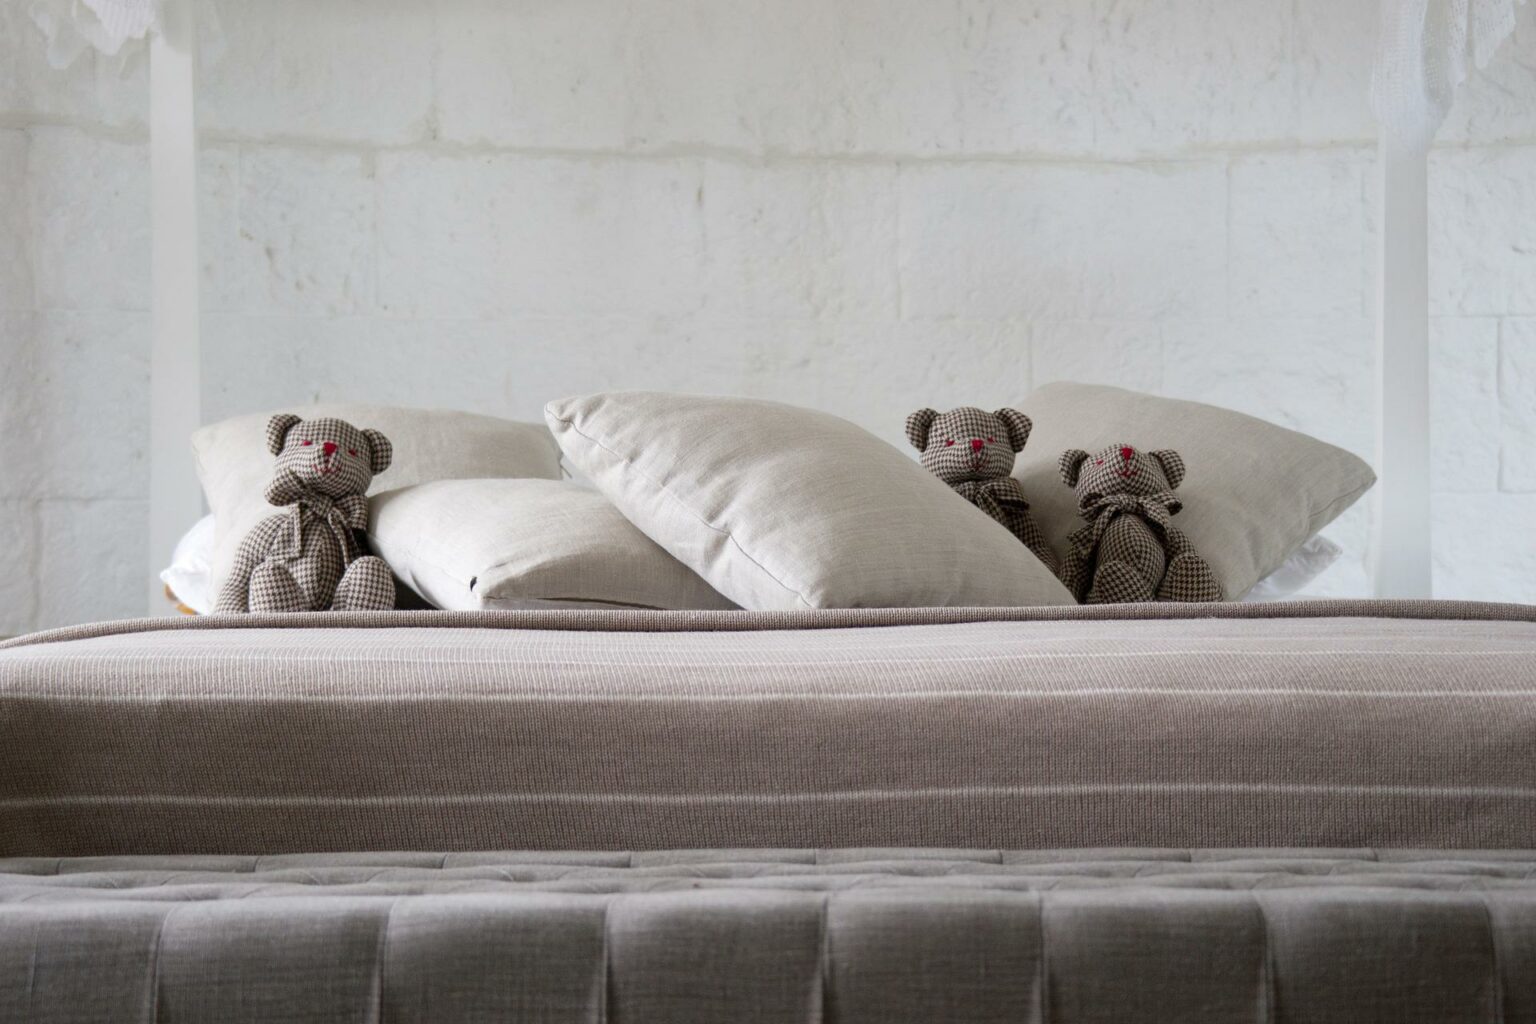 bear mattress cover maintenance